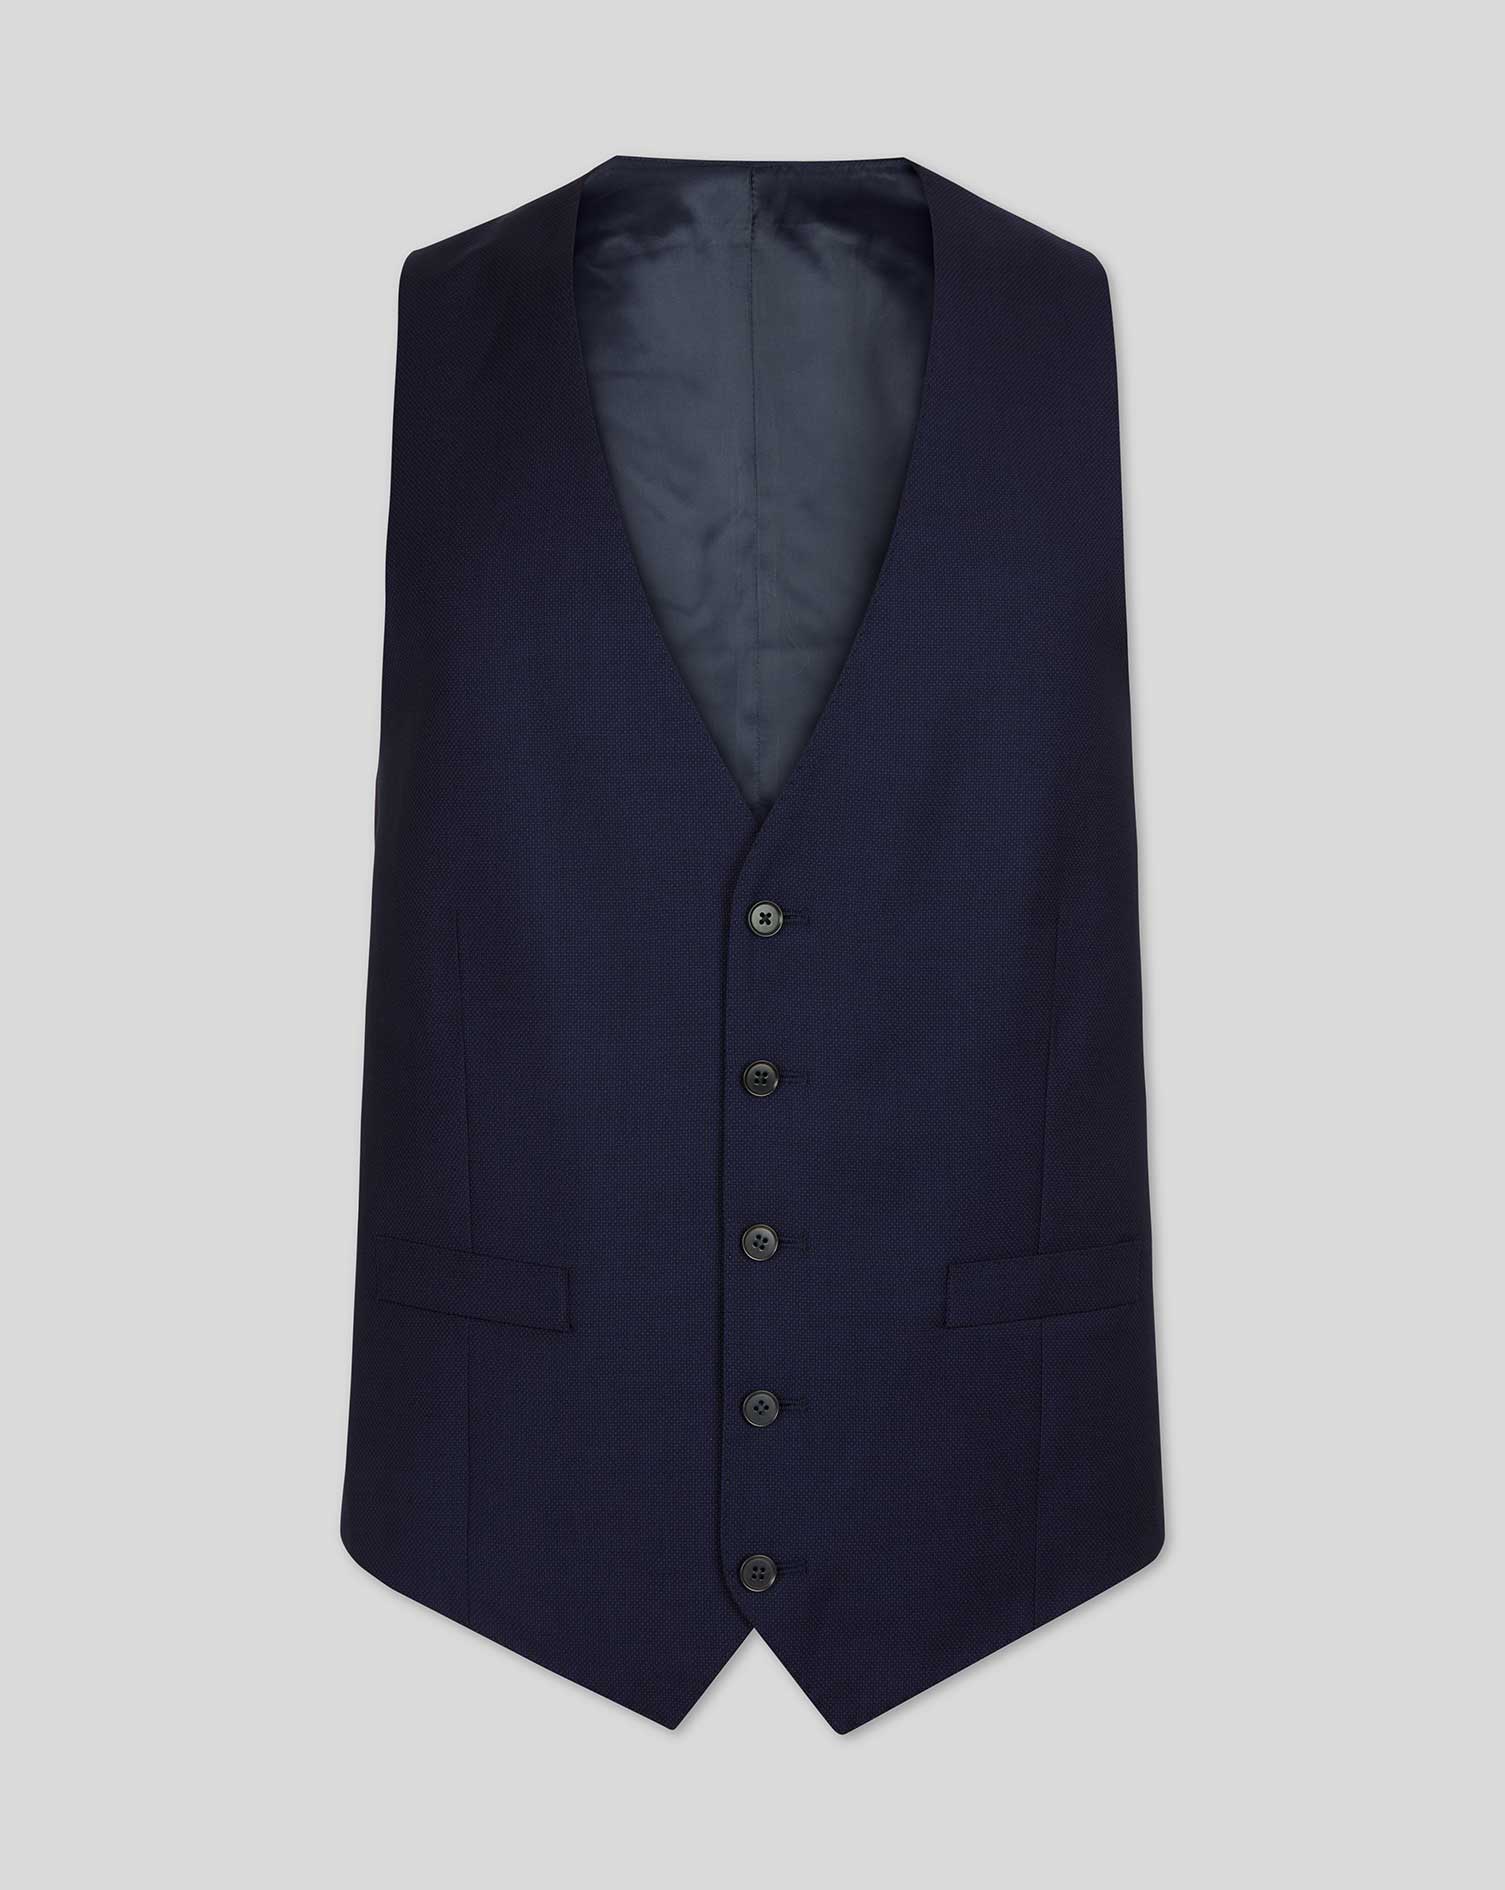 Men's Charles Tyrwhitt Birdseye Travel Suit Waistcoat - Ink Blue Size w40 Wool
